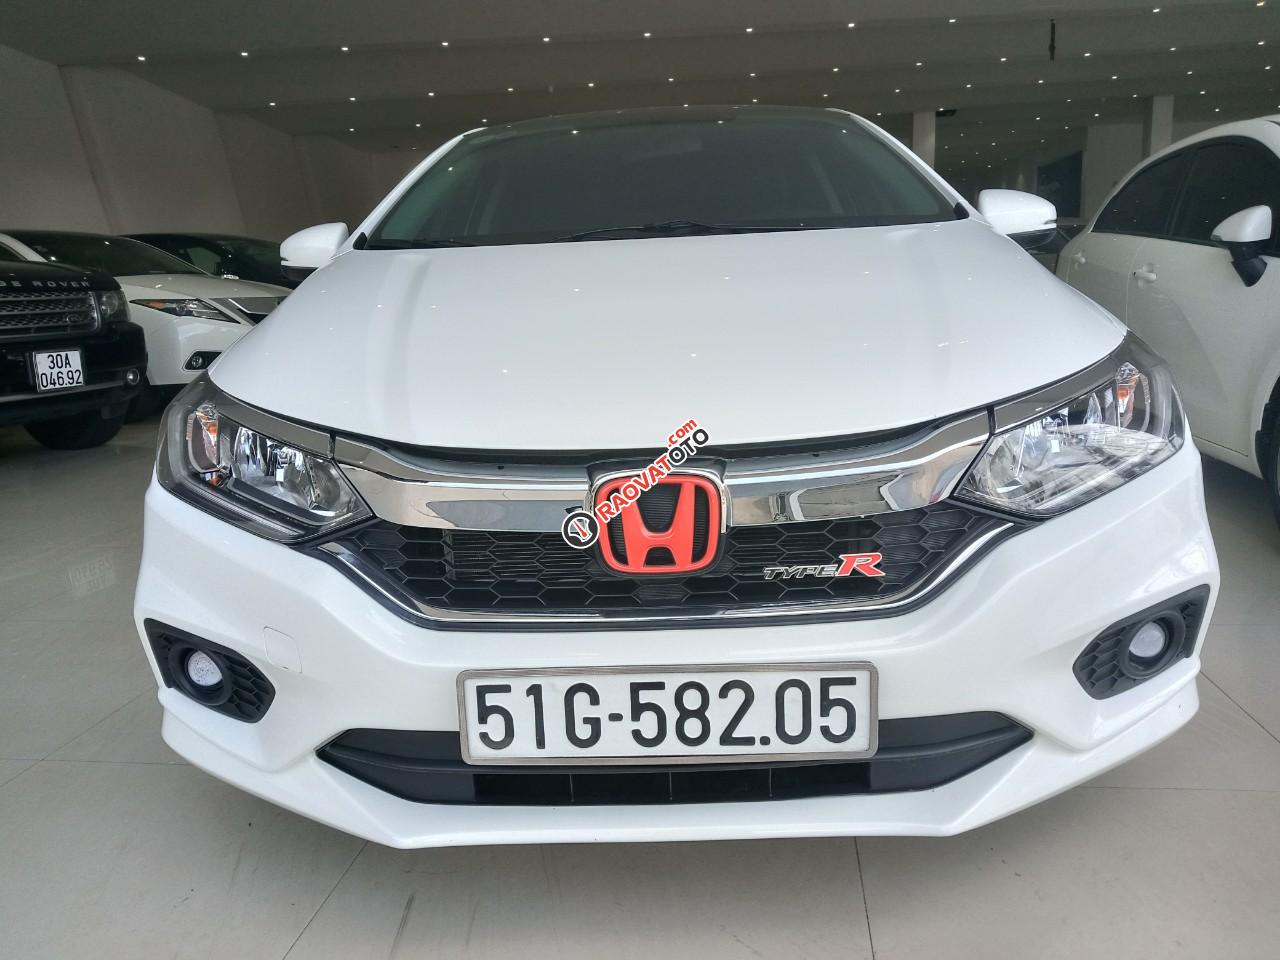 Bán Honda City 1.5CVT sản xuất 2018, màu trắng biển Tp HCM, giá 540 triệu-0